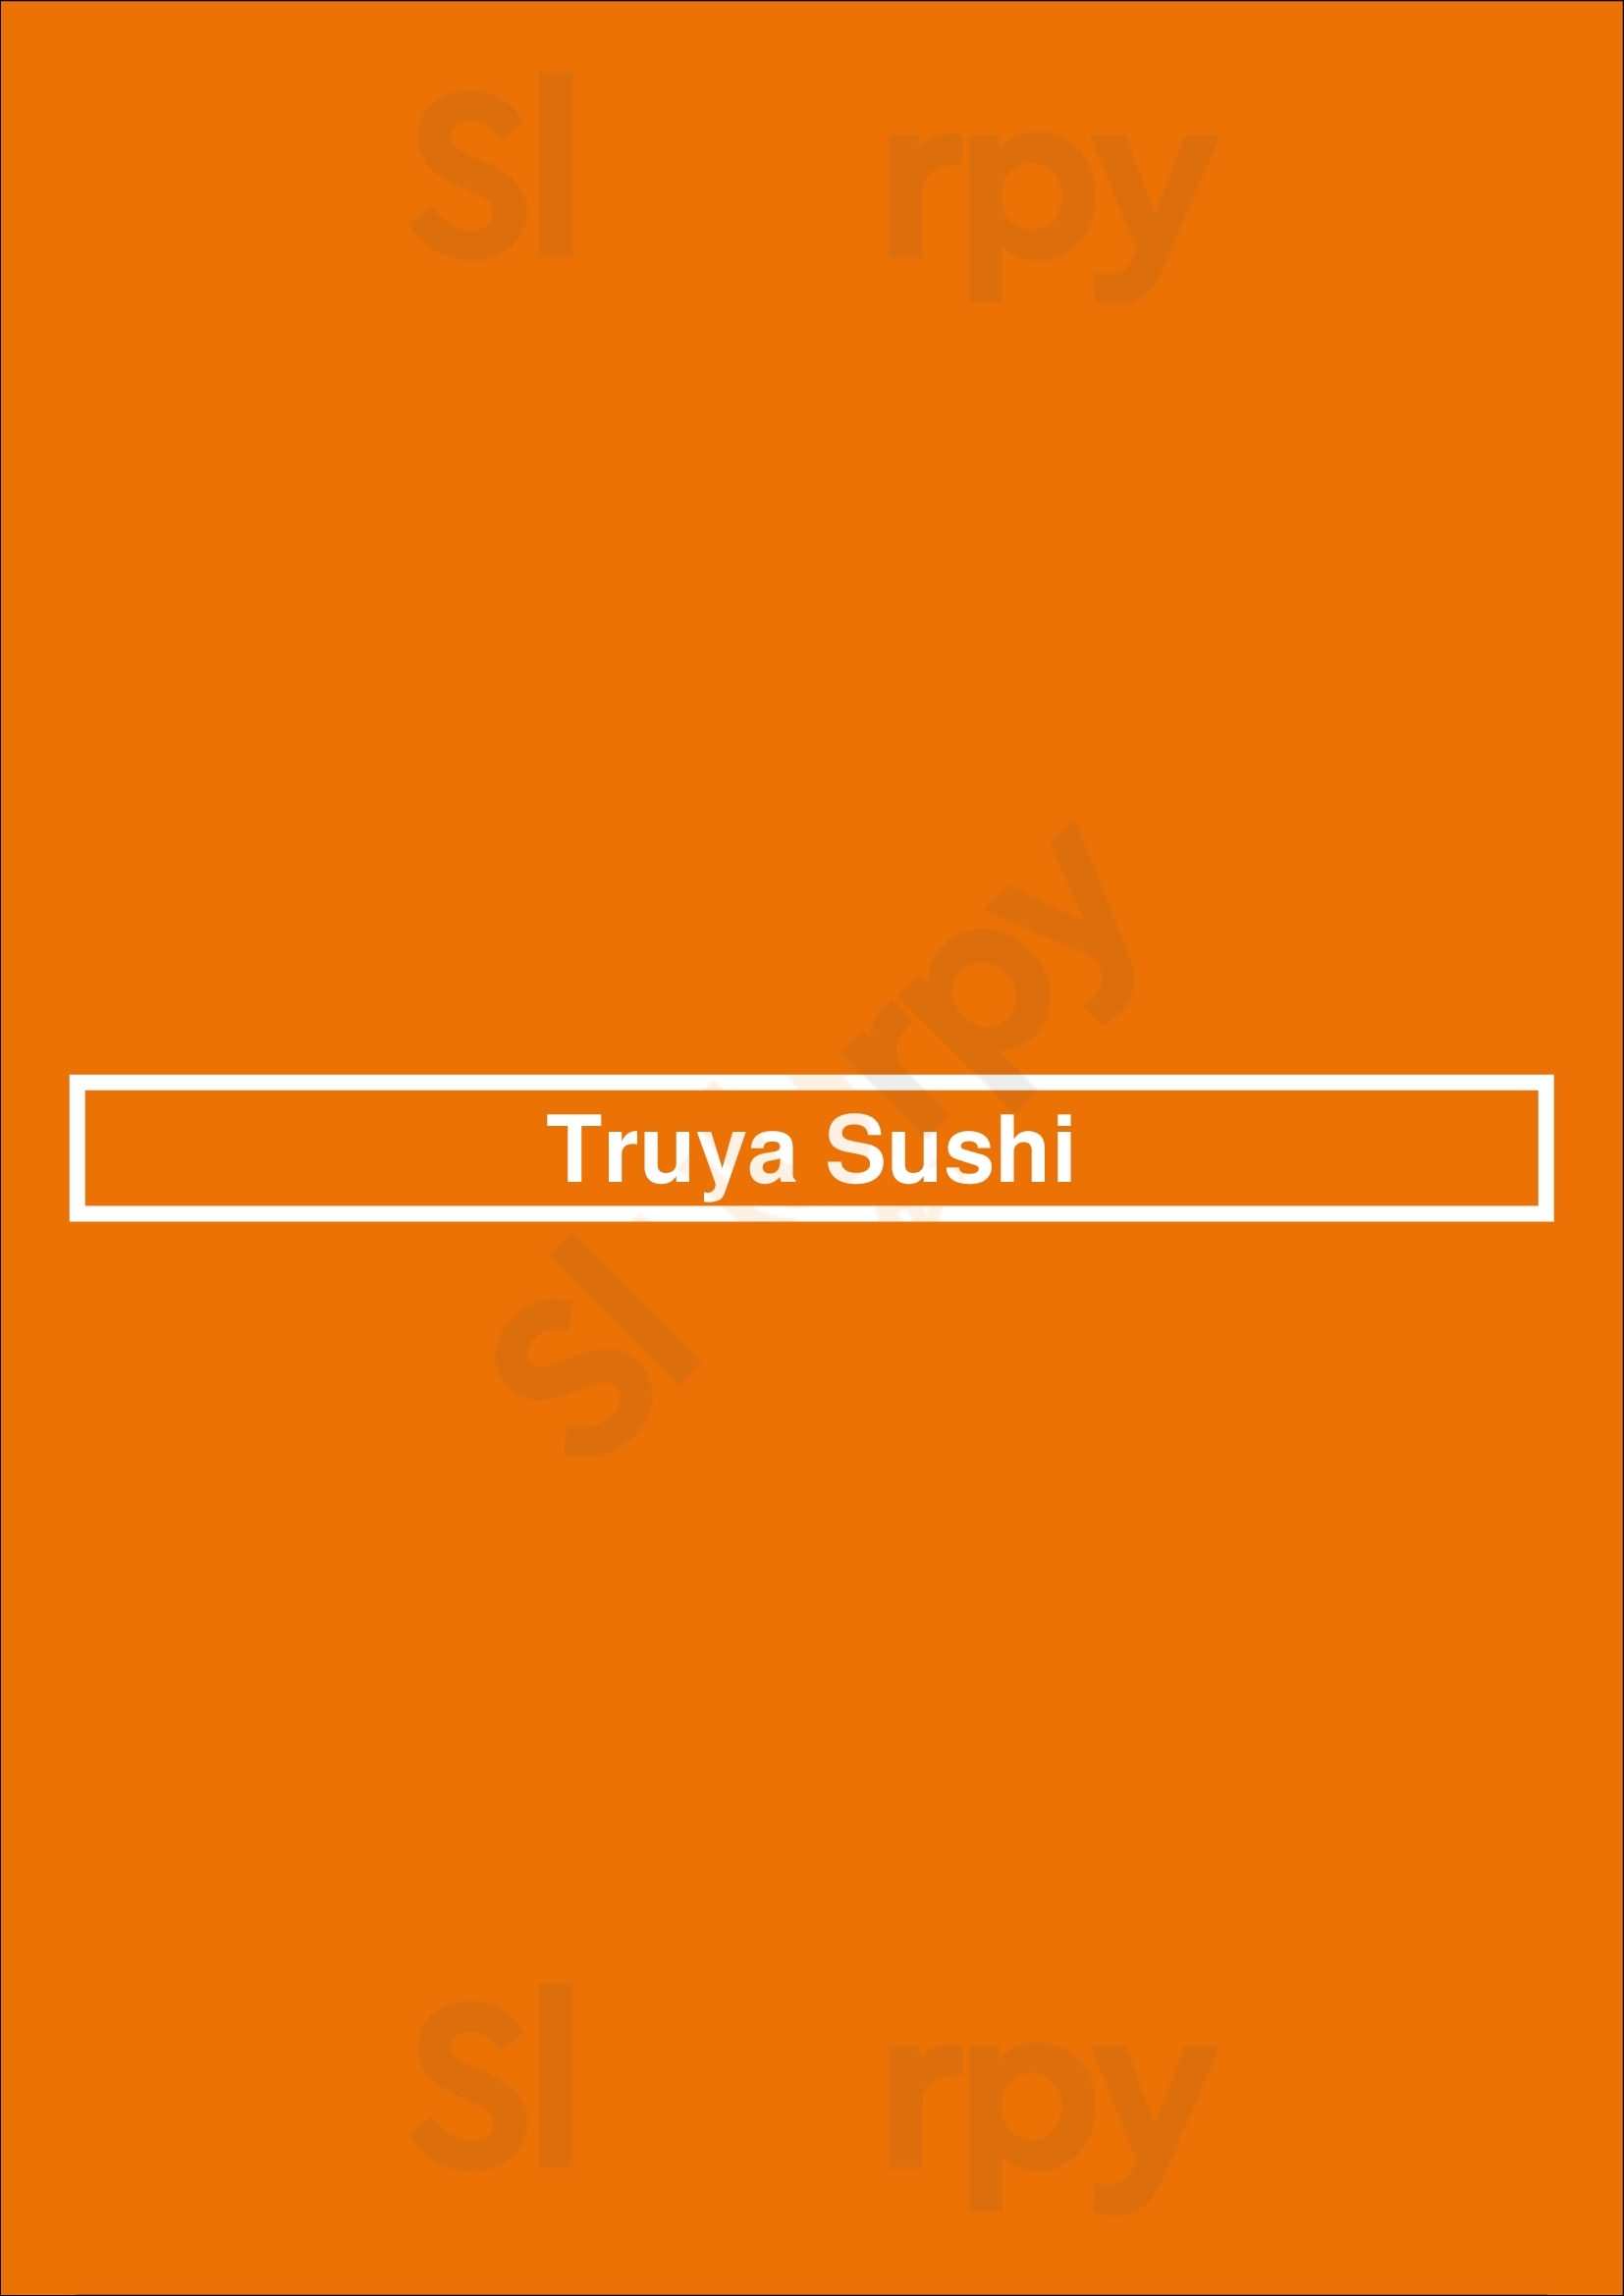 Truya Sushi San Jose Menu - 1